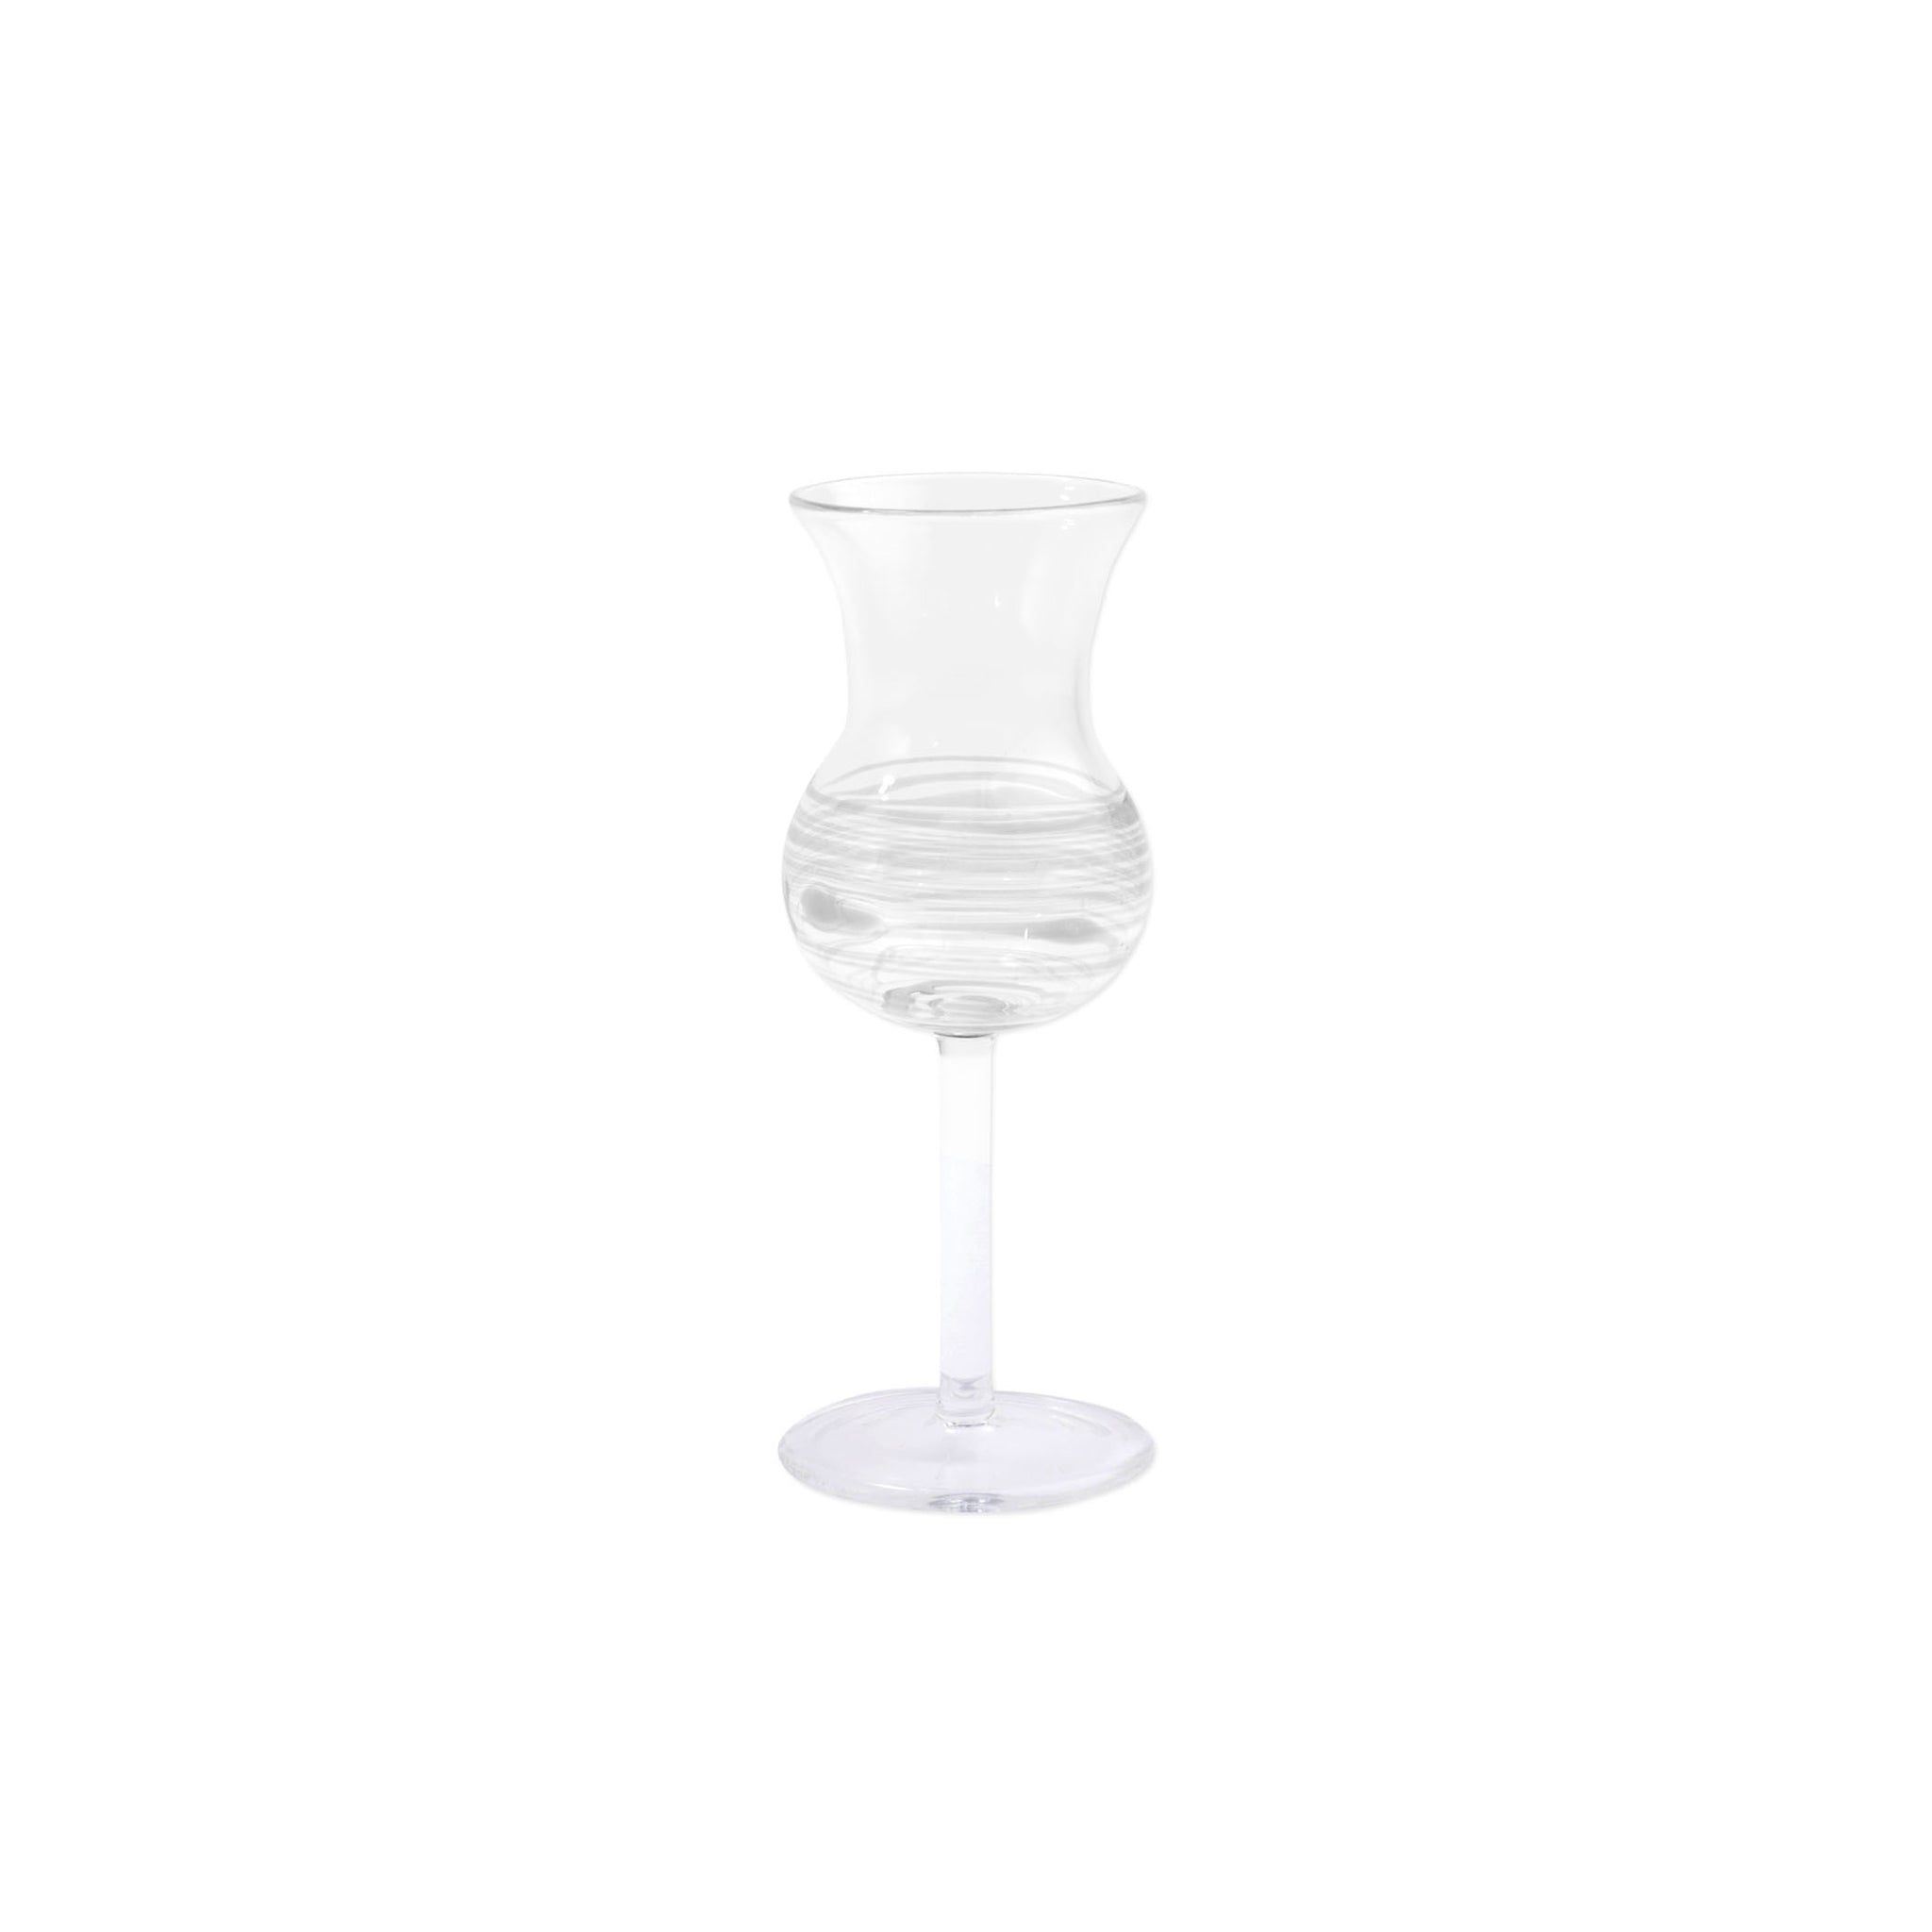 Swirl Limoncello Glass - Set of 4 - White